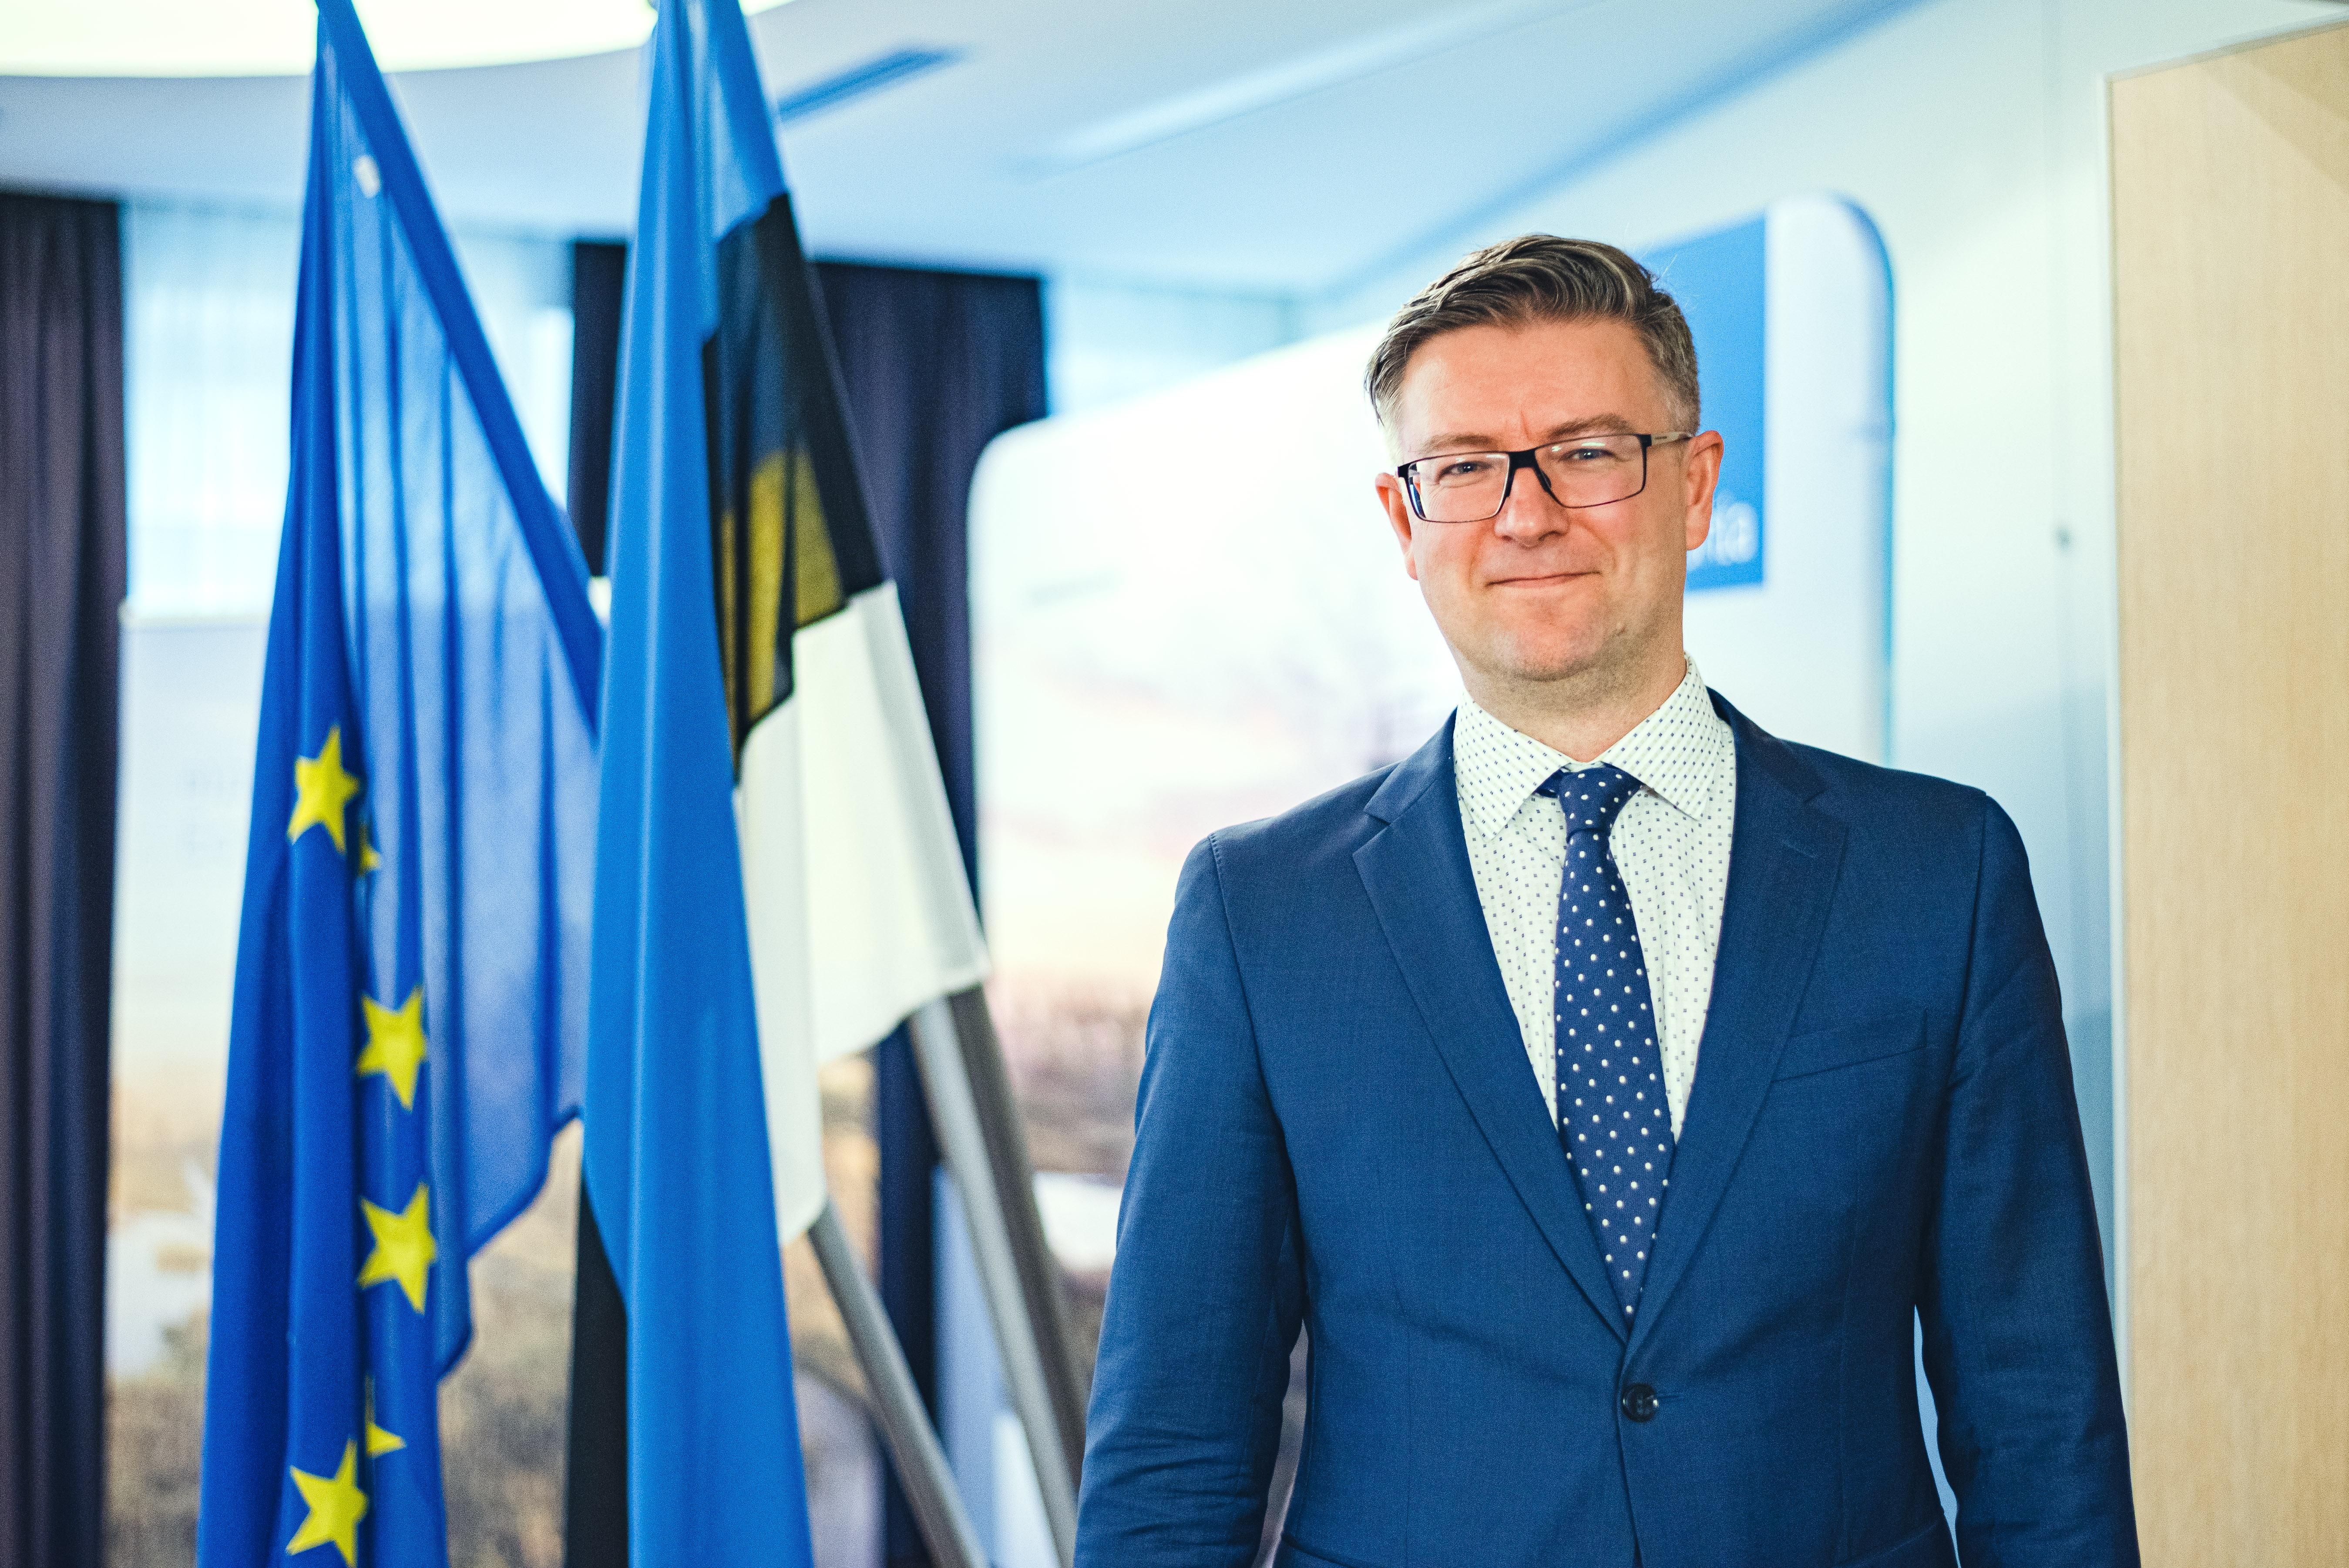 Мы тоже учимся у Украины, – посол Эстонии рассказал о противодействии пропаганде и демократии